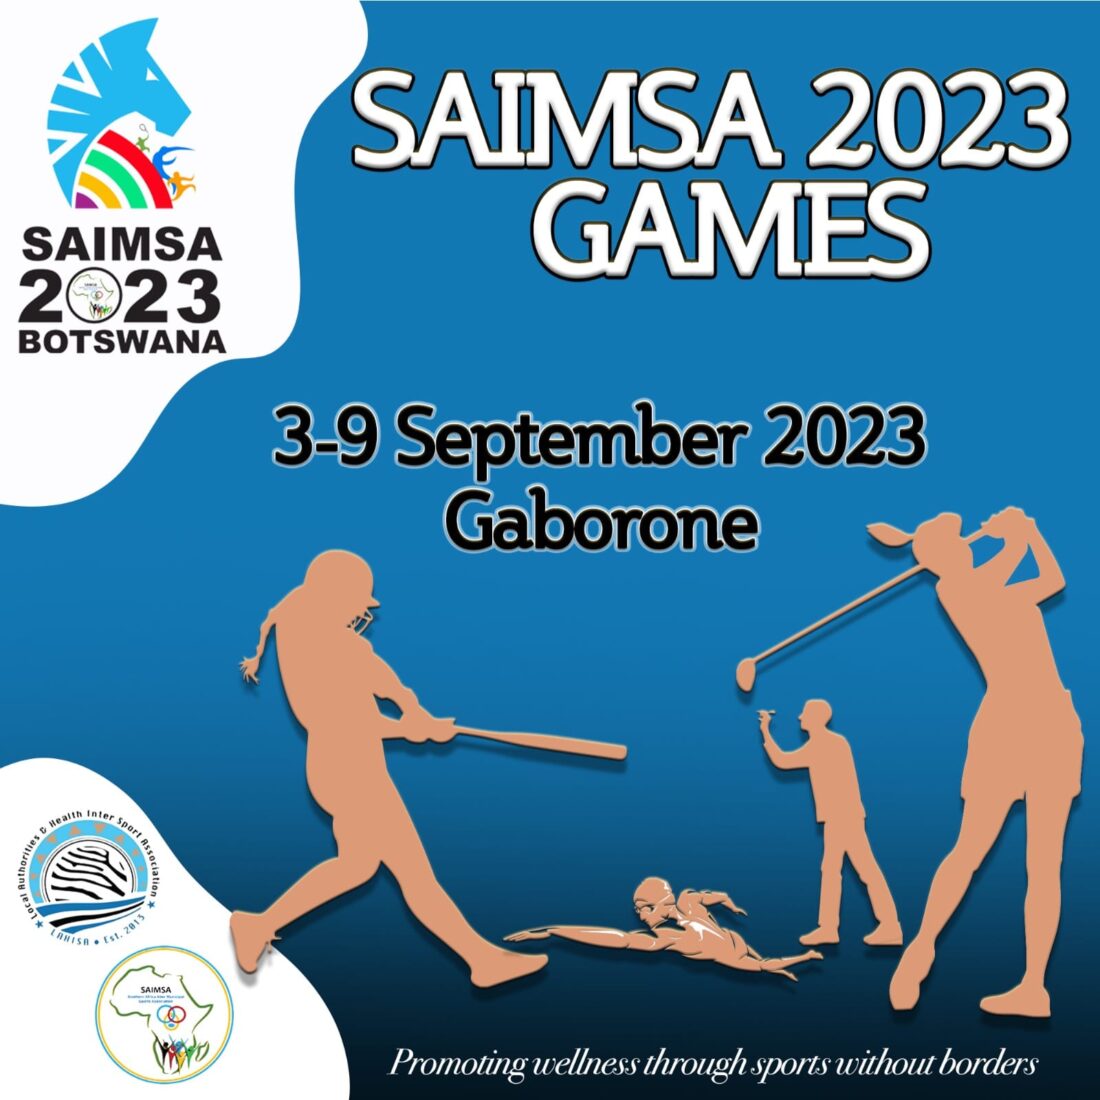 SAIMSA Games 2023 Gaborone Botswana